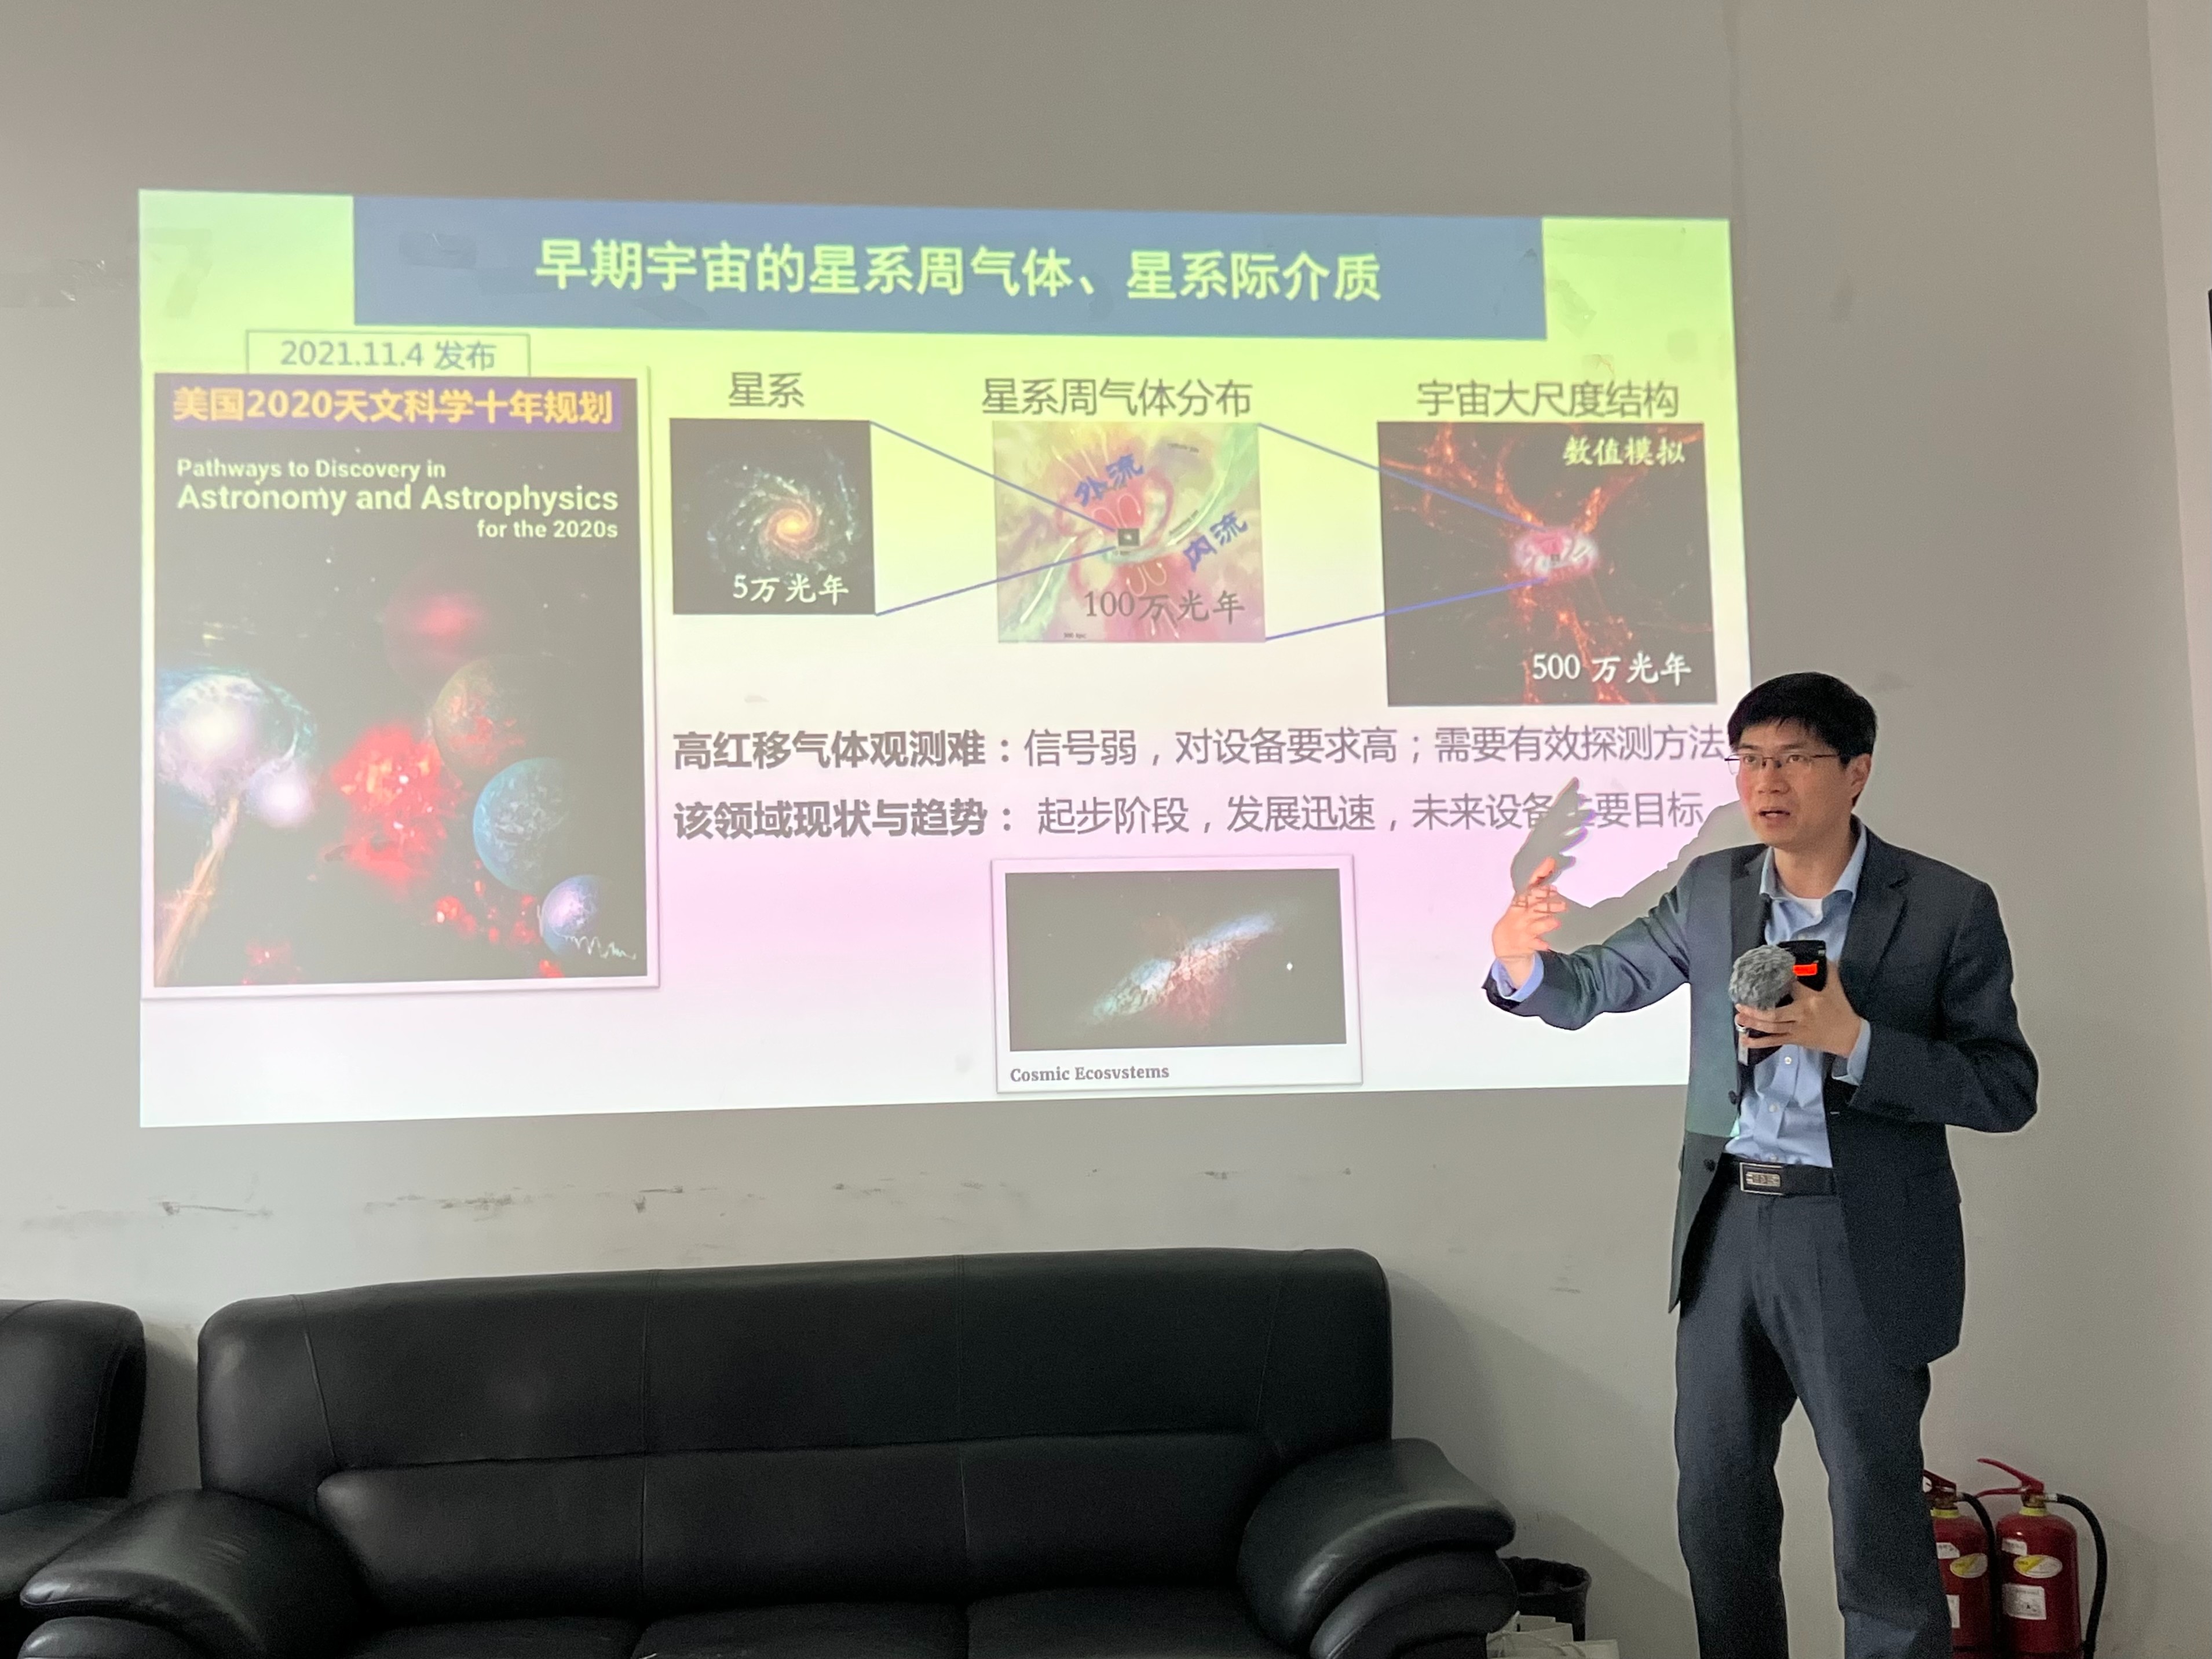 焦点 | 清华团队运营的“神威•太湖之光”超算系统与合作应用双双问鼎世界最高奖